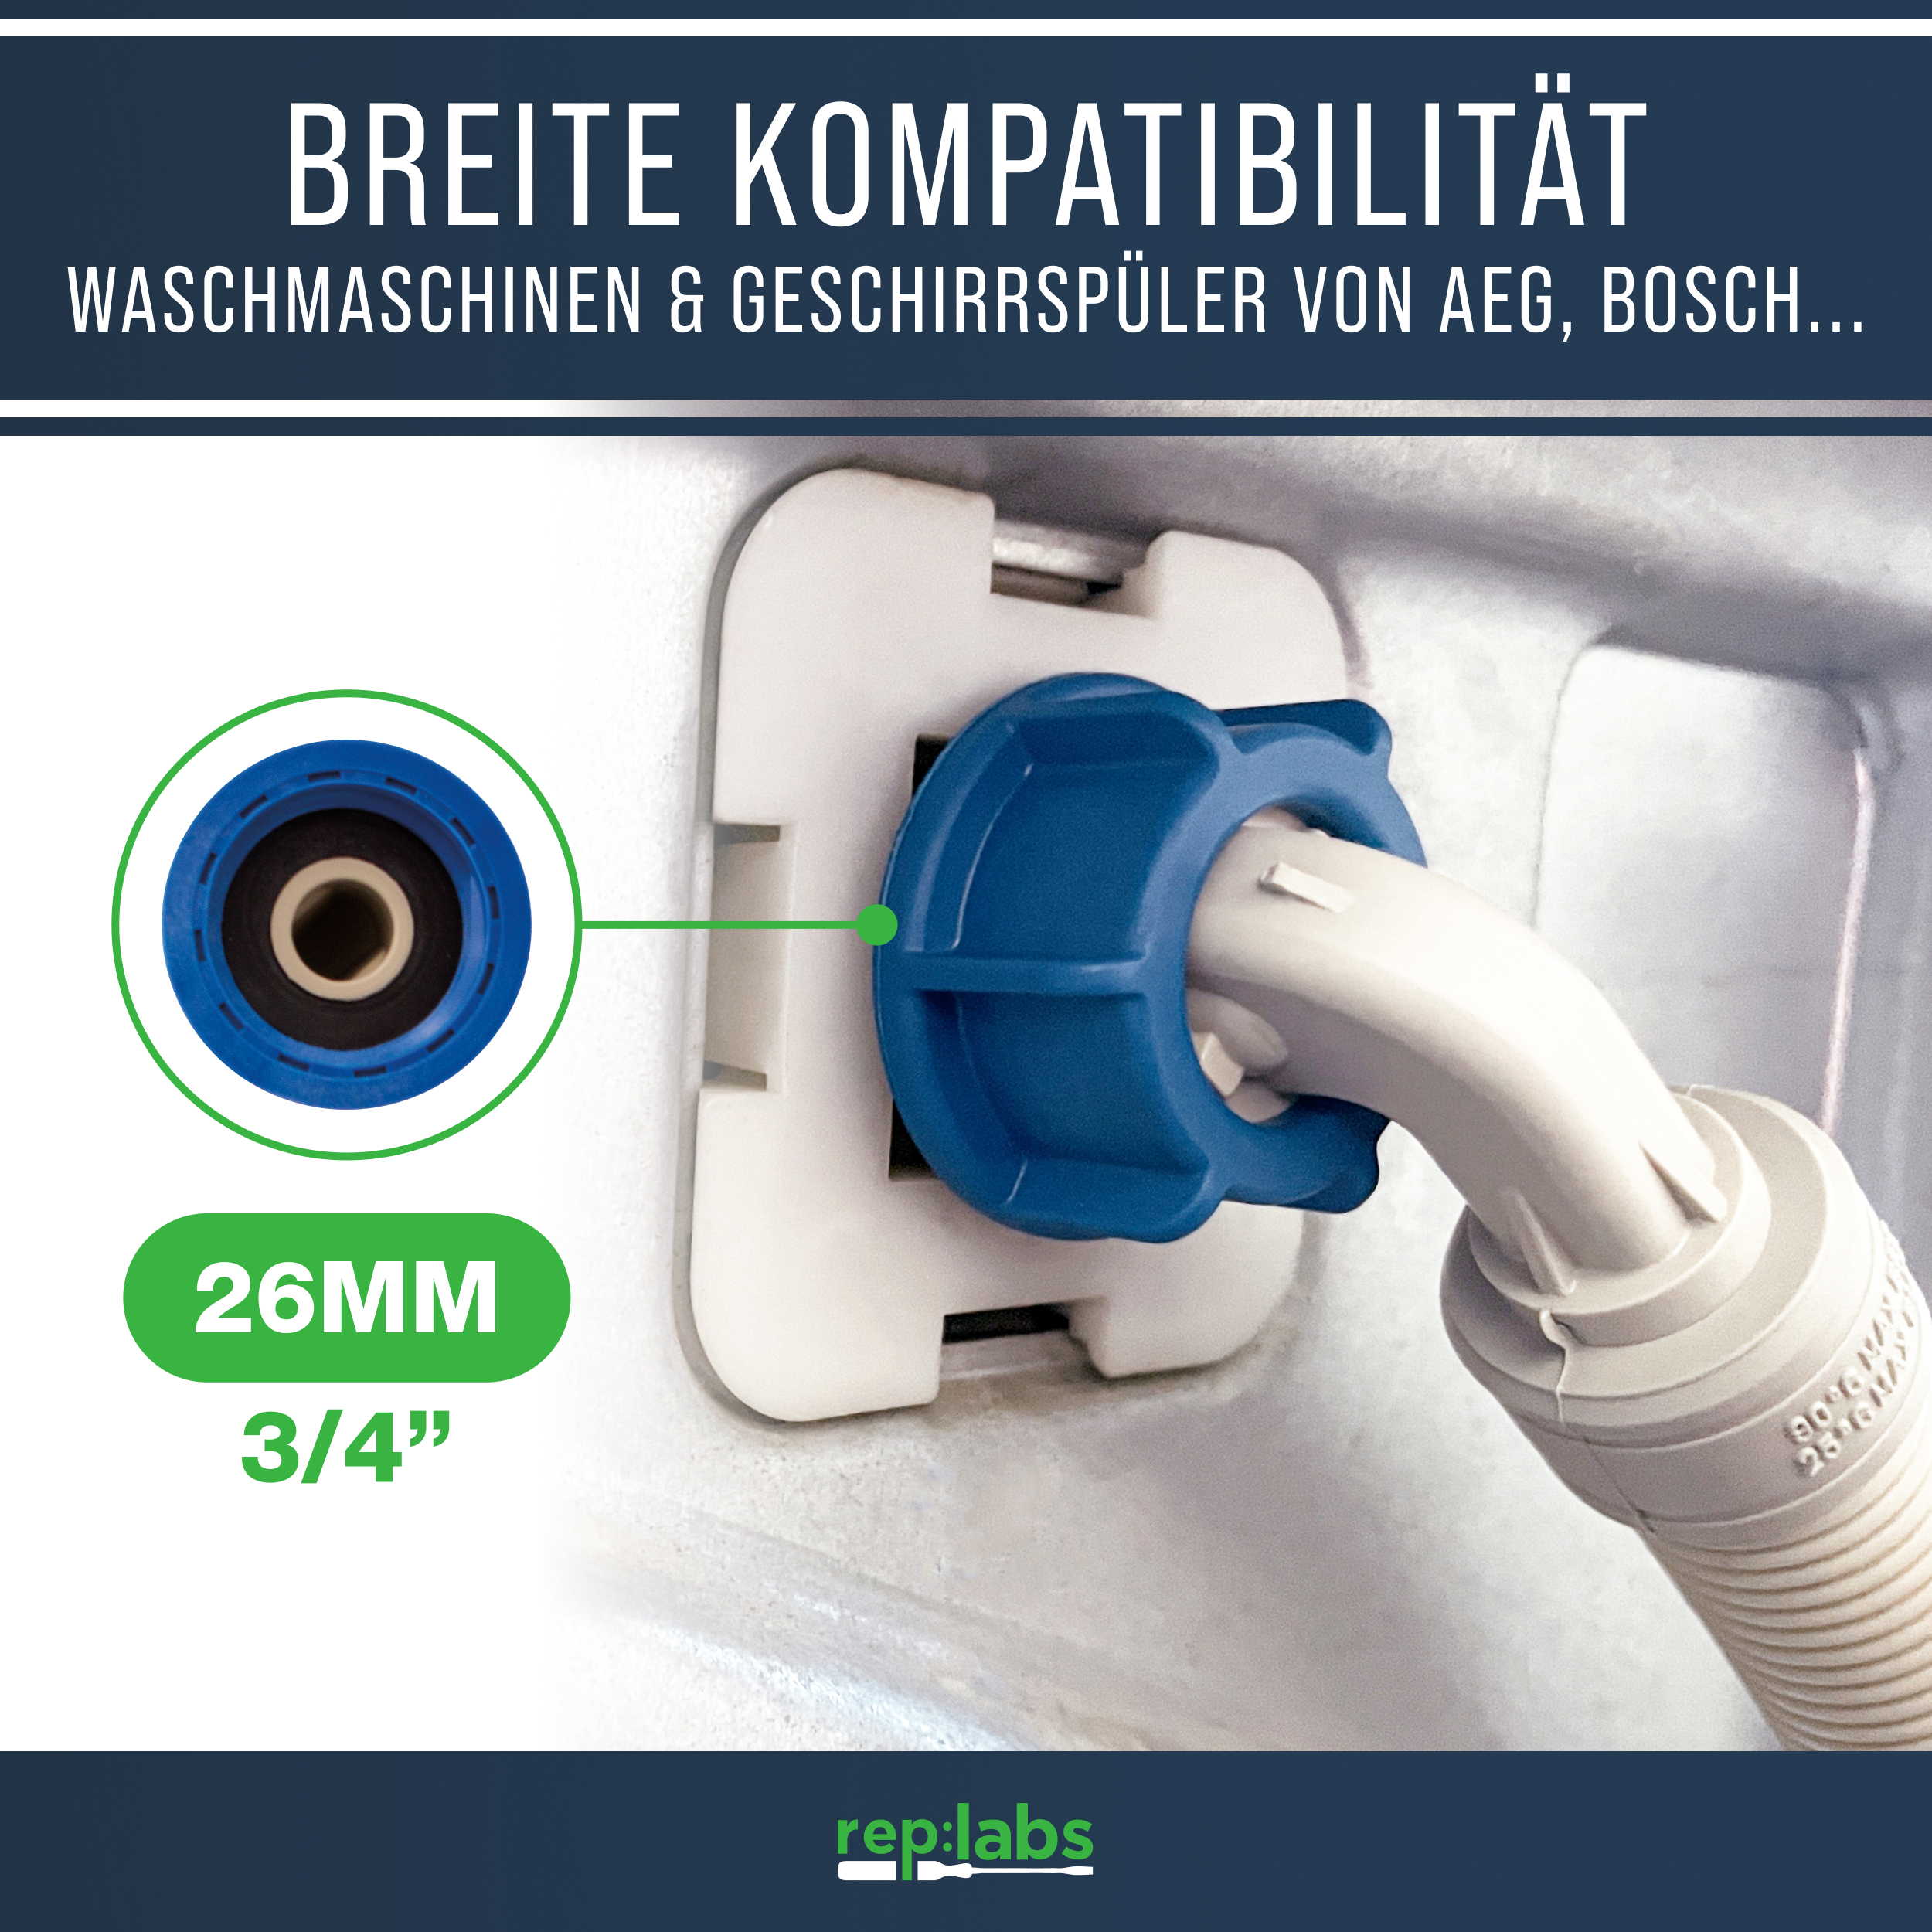 Zulaufschlauch Aquastopschlauch 1,5m - Universaler Sicherheitsschlauch für Waschmaschine und Geschirrspüler bis 90°C 